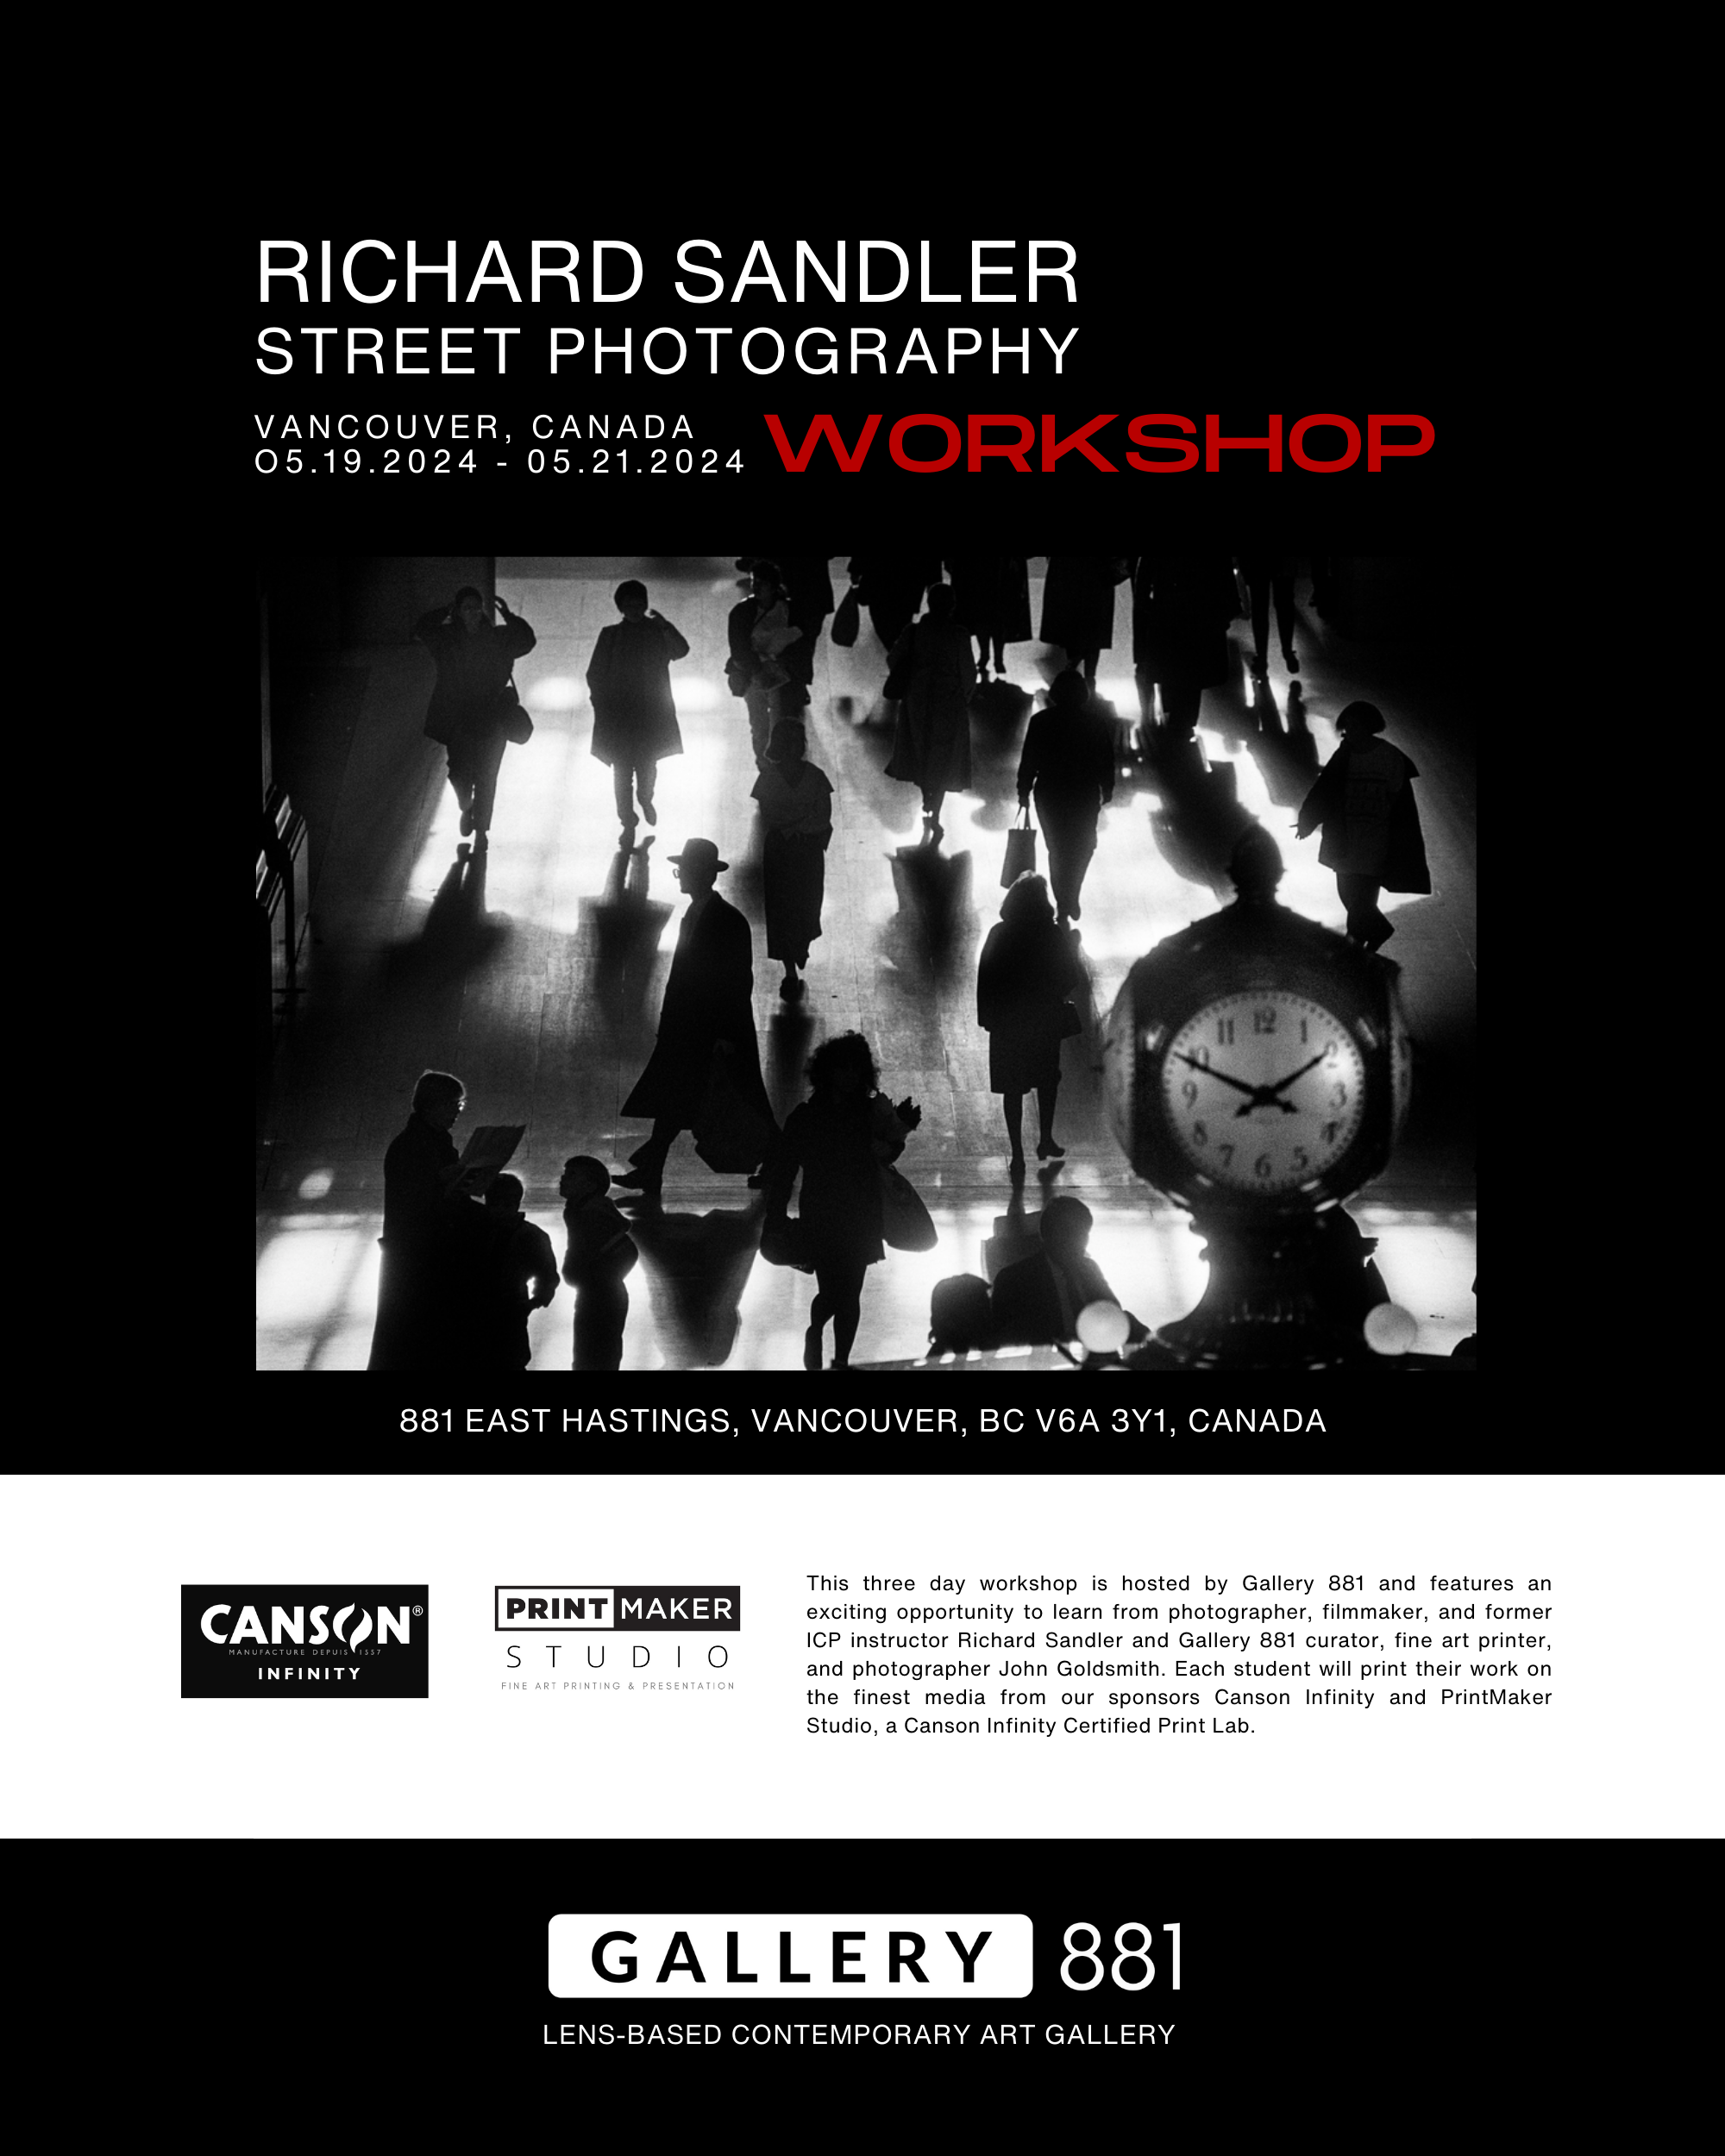 Gallery-881-Richard-Sandler-Workshop-3.png